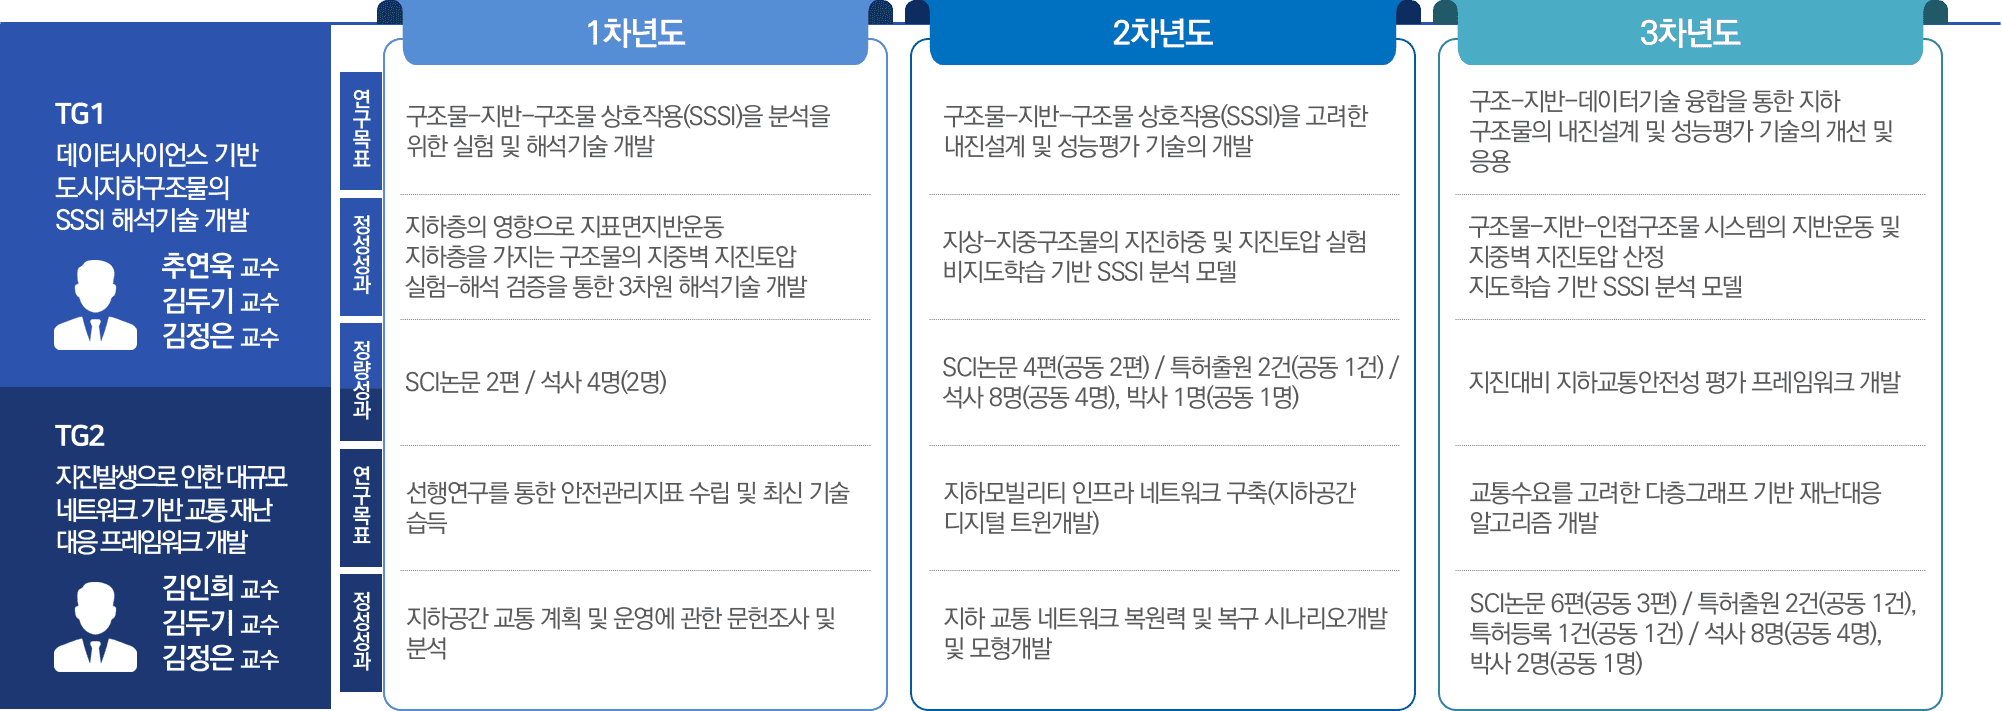 김인희교수 2021 기초연구실 지원사업 선정